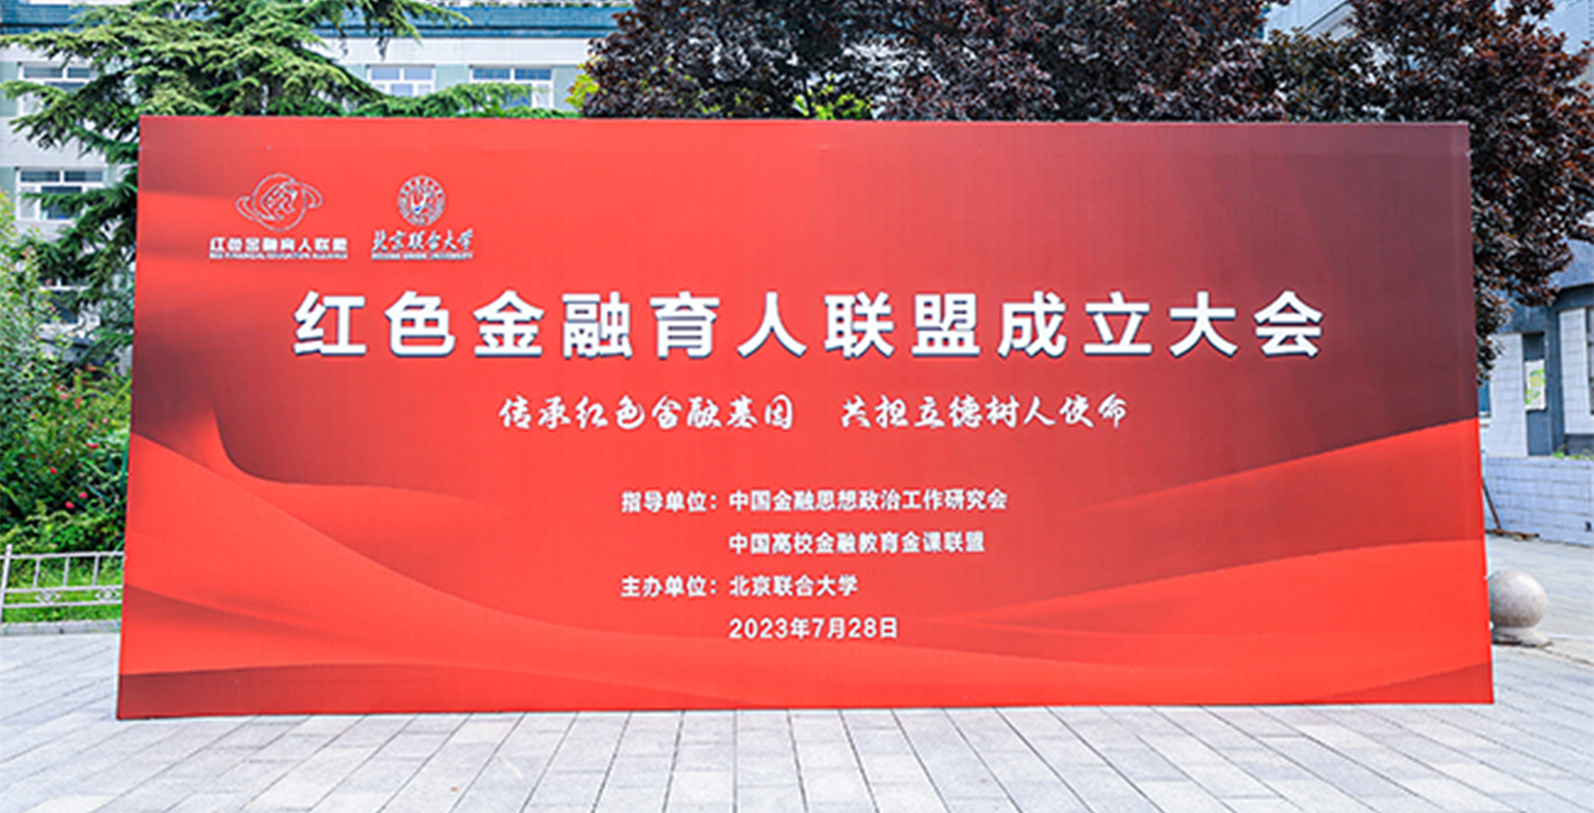 全国首个红色金融育人联盟在京成立